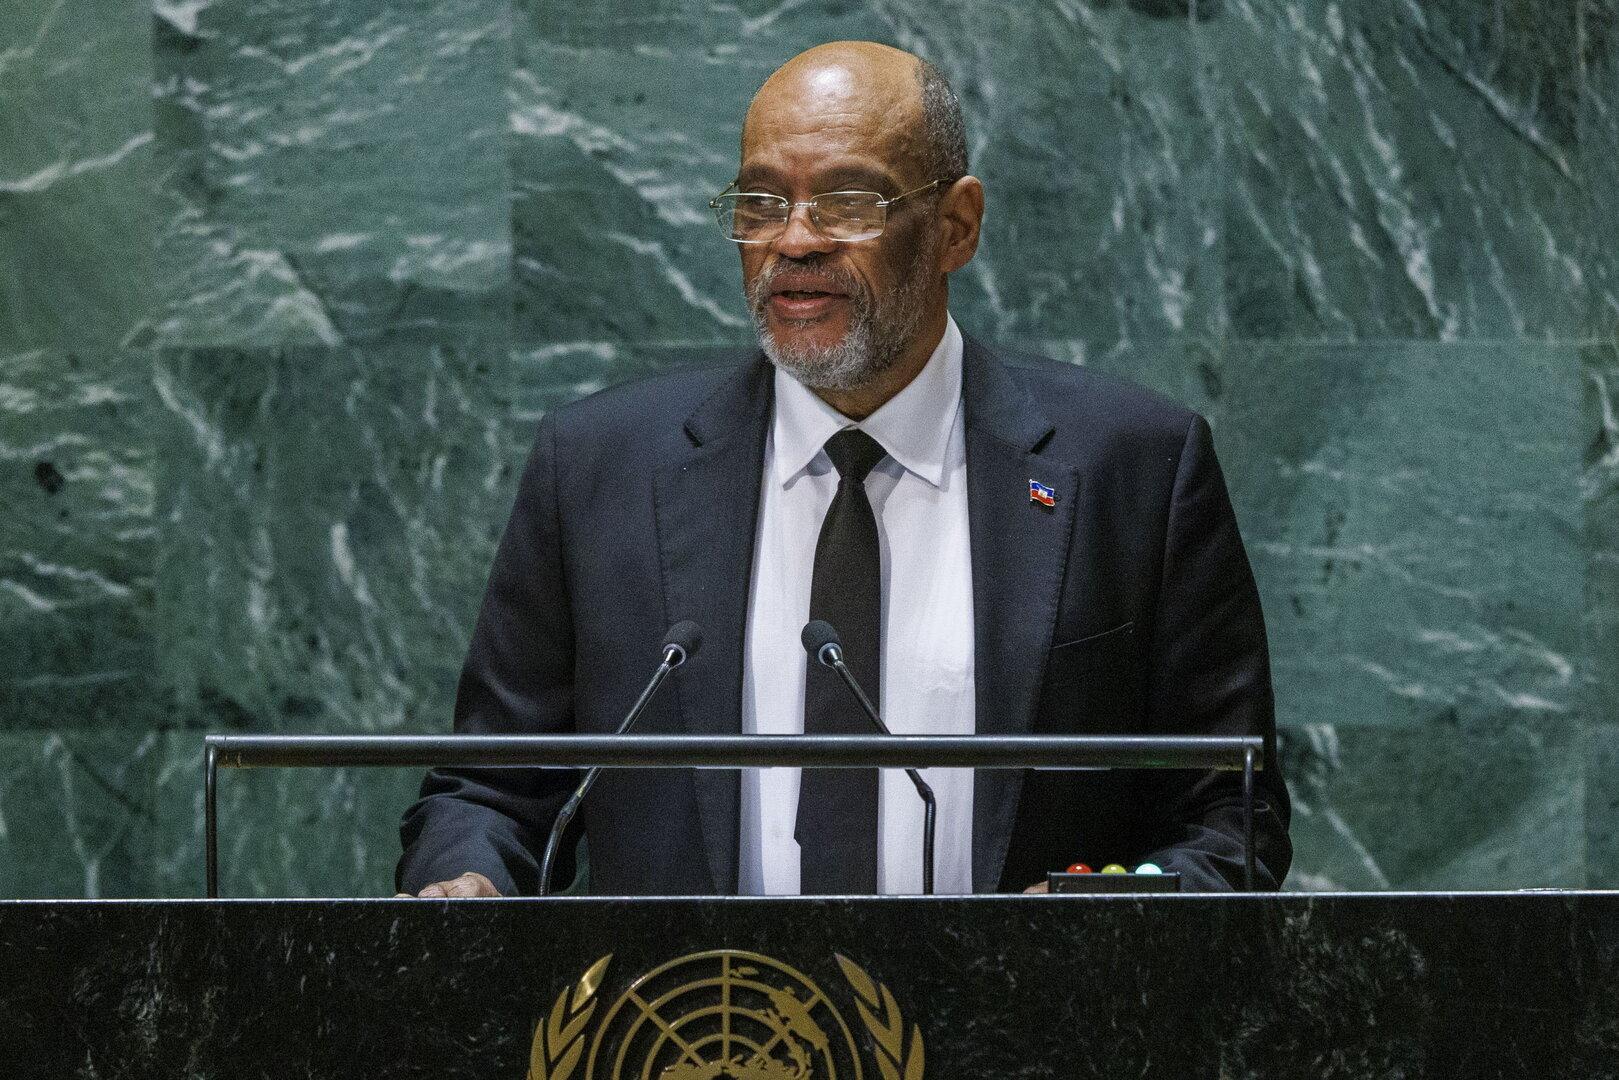 Bandengewalt eskaliert: Haitis Regierungschef tritt zurück